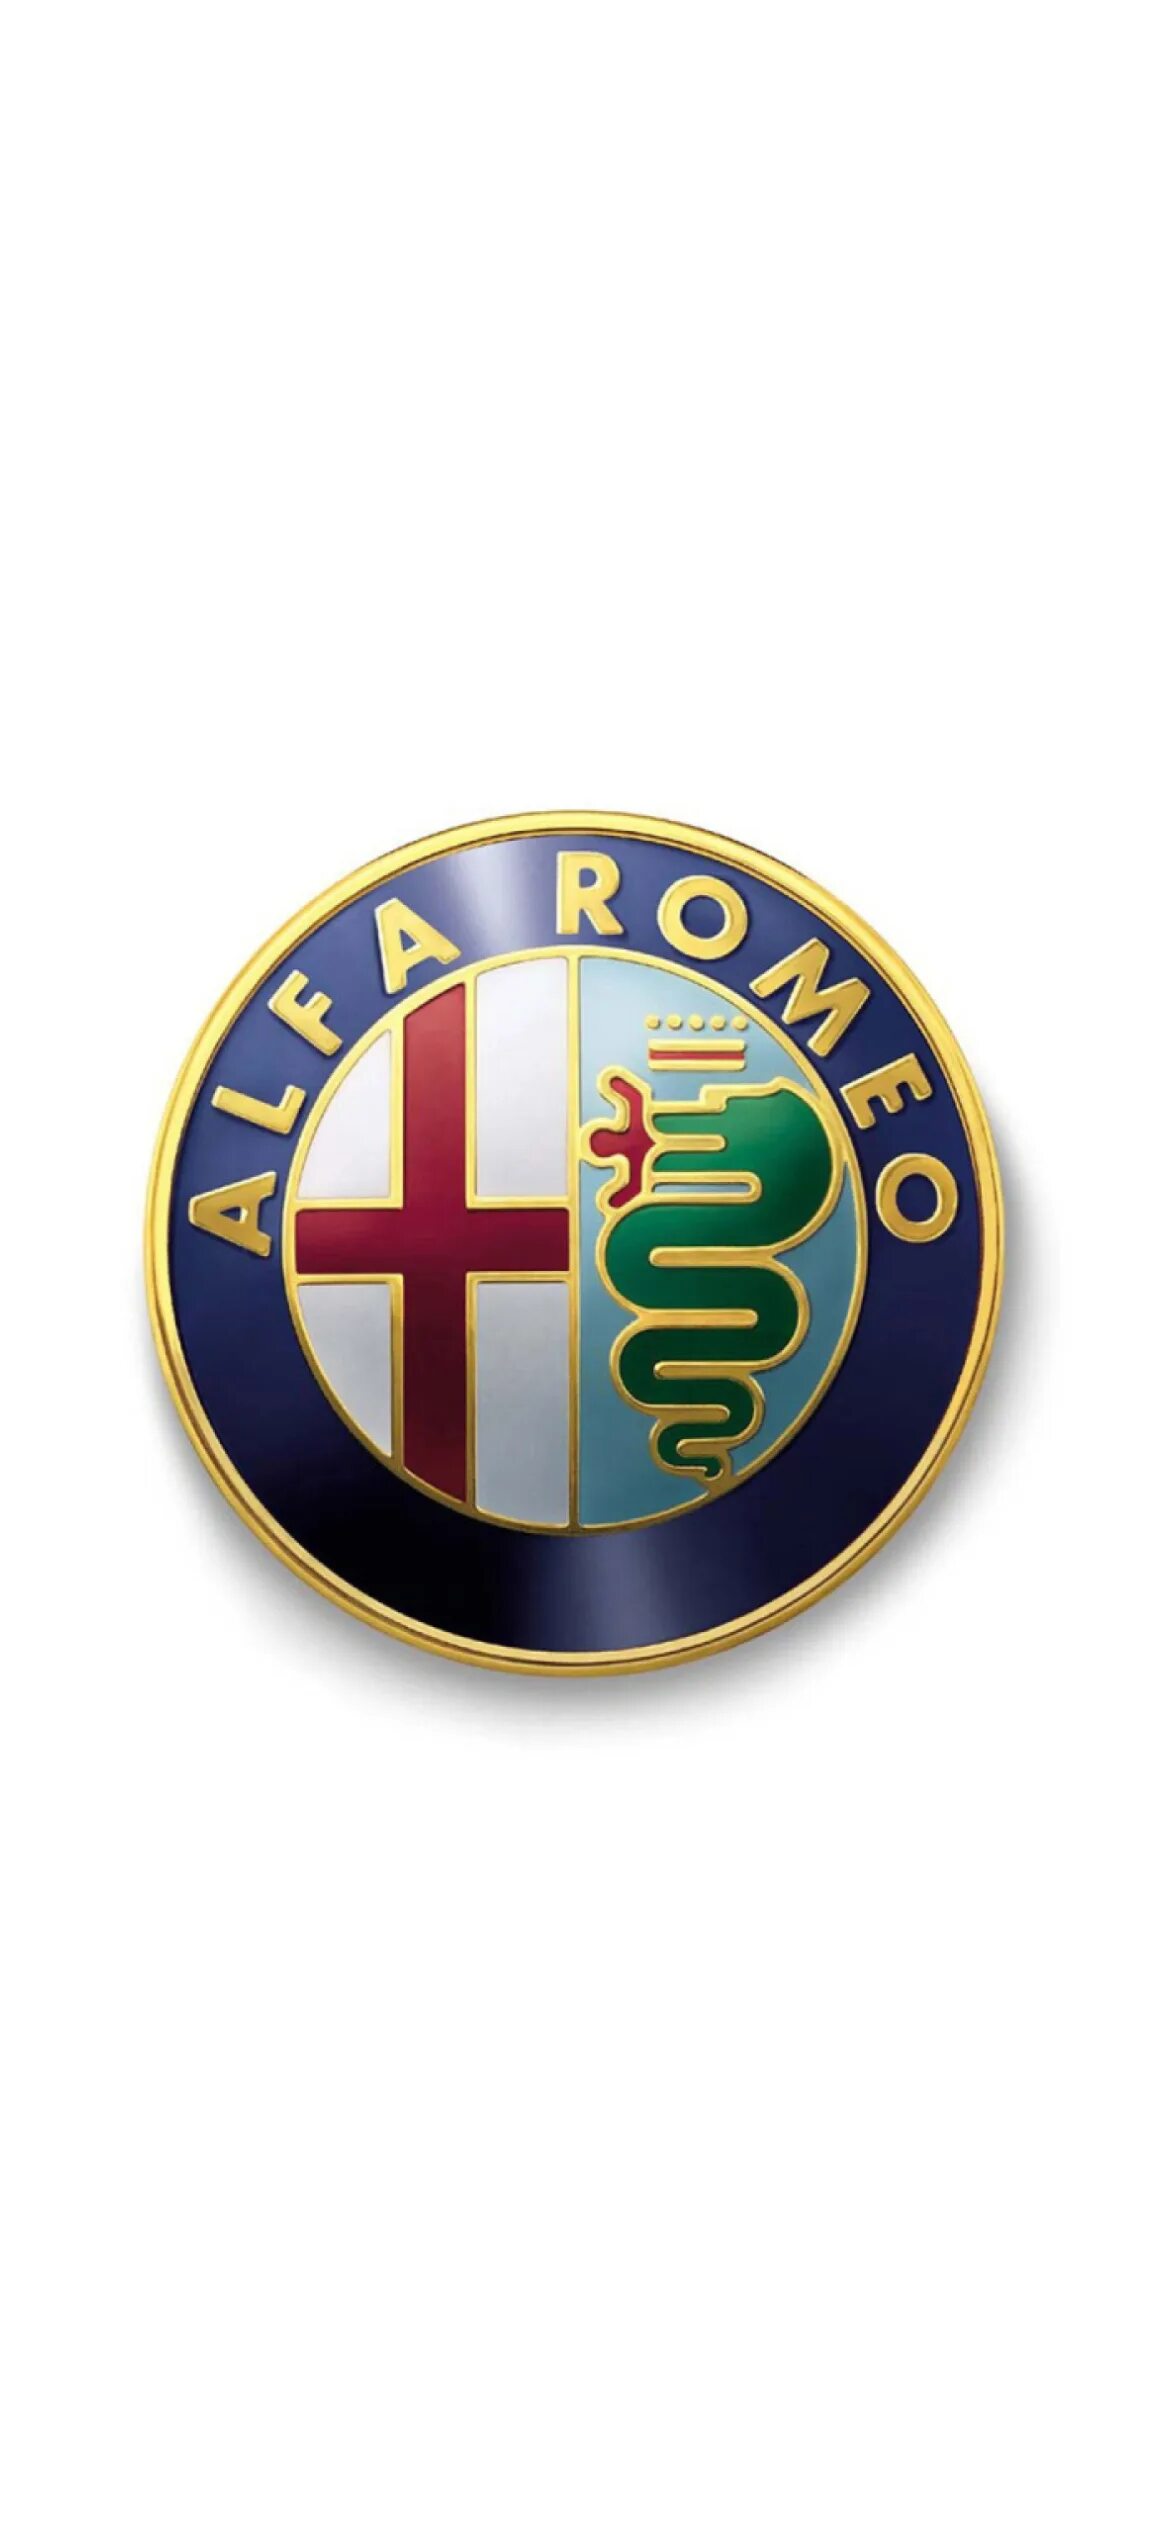 Знак альфа ромео. Alfa Romeo logo. Альфа Ромео значок. Alfa Romeo logo Wallpaper. Лого 112 лет Альфа Ромео.